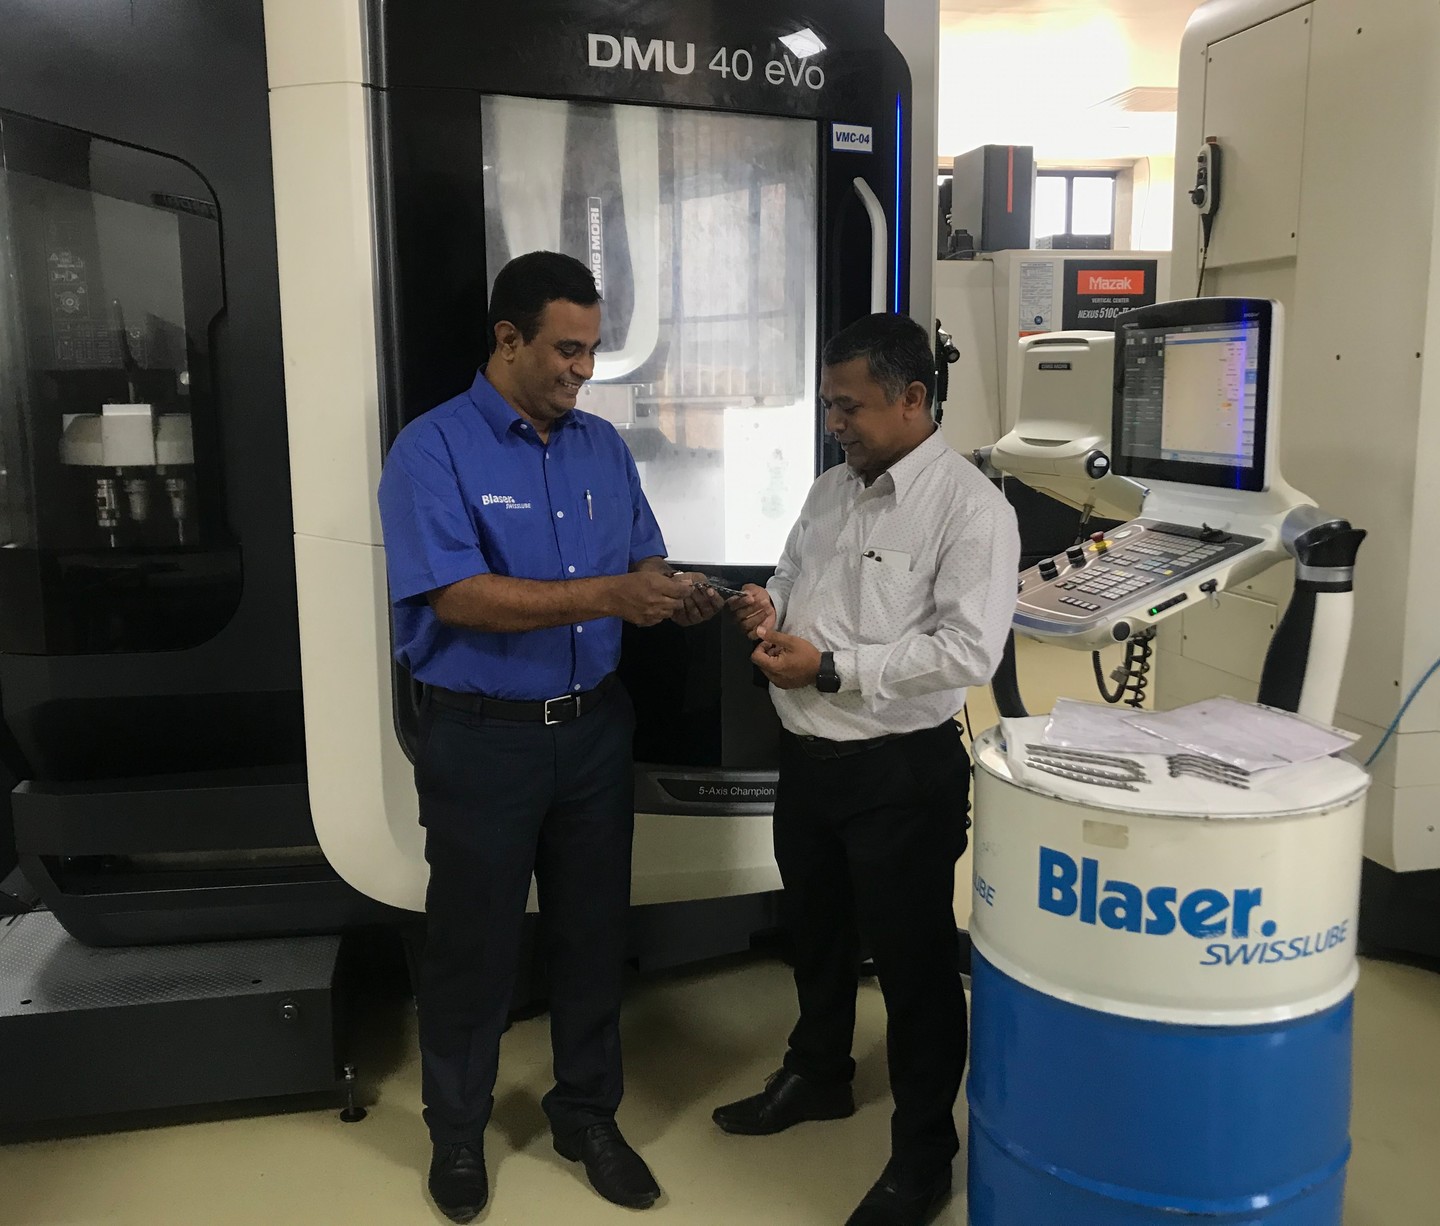 Customer_Mr personal de Mehul y Blaser Swisslube (Amol Pawar) discutiendo sobre el componente producido – Placa tibial proximal-3476×2959-1440×1226